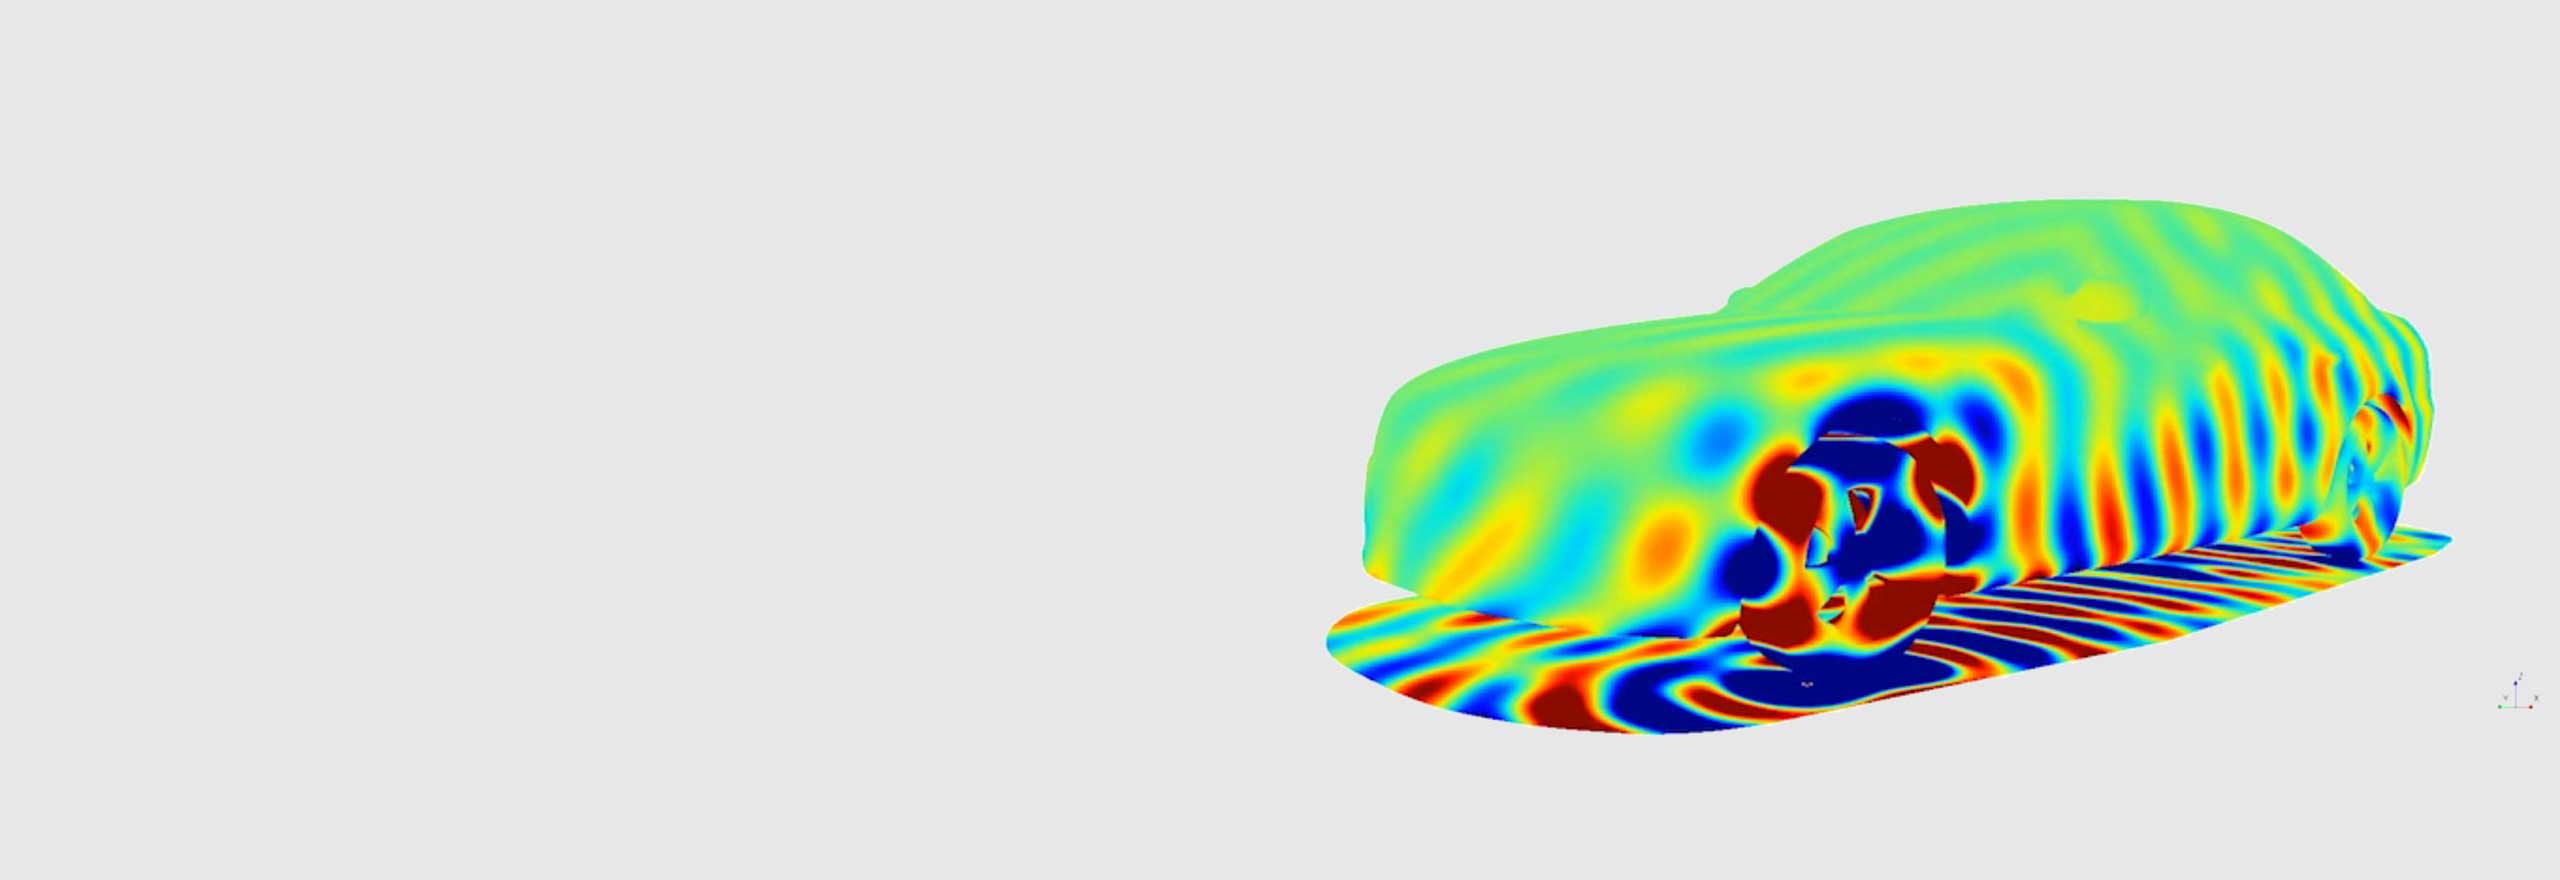 音響シミュレーションソフトウェアを使用した自動車の通過騒音シミュレーション 